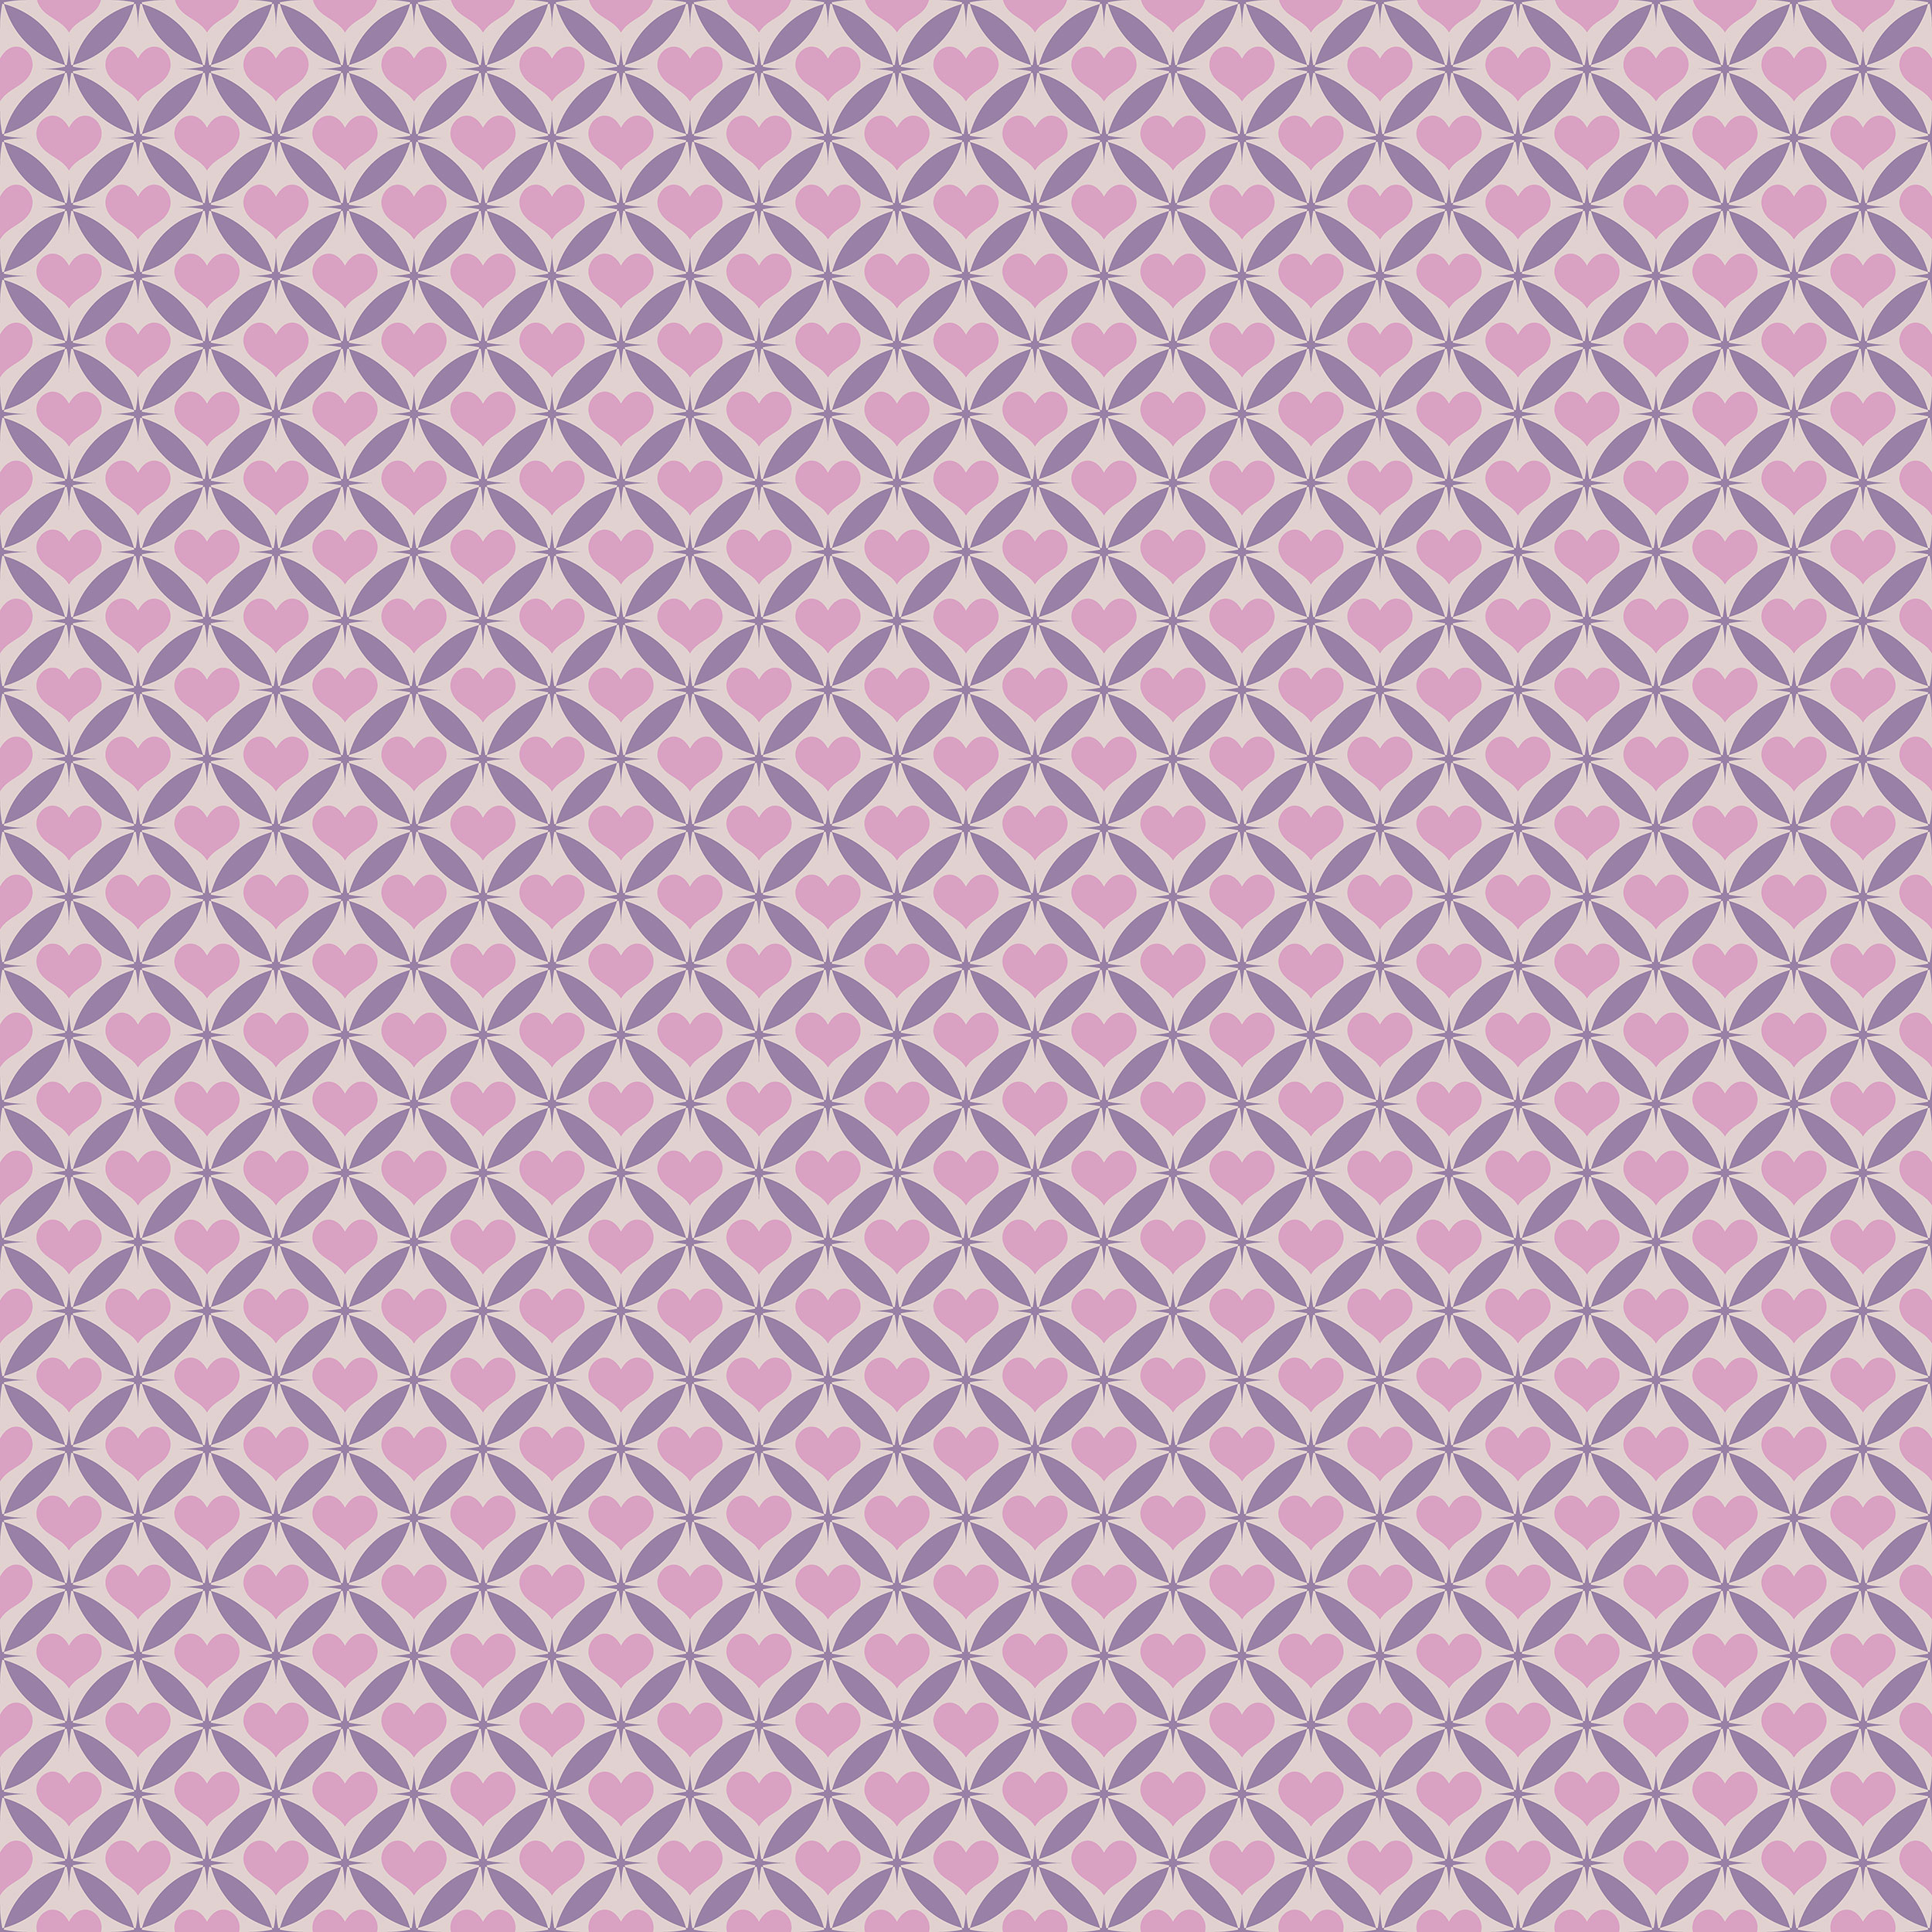 ハートデザインの壁紙 背景素材 無料画像no 228 ハート模様 薄紫